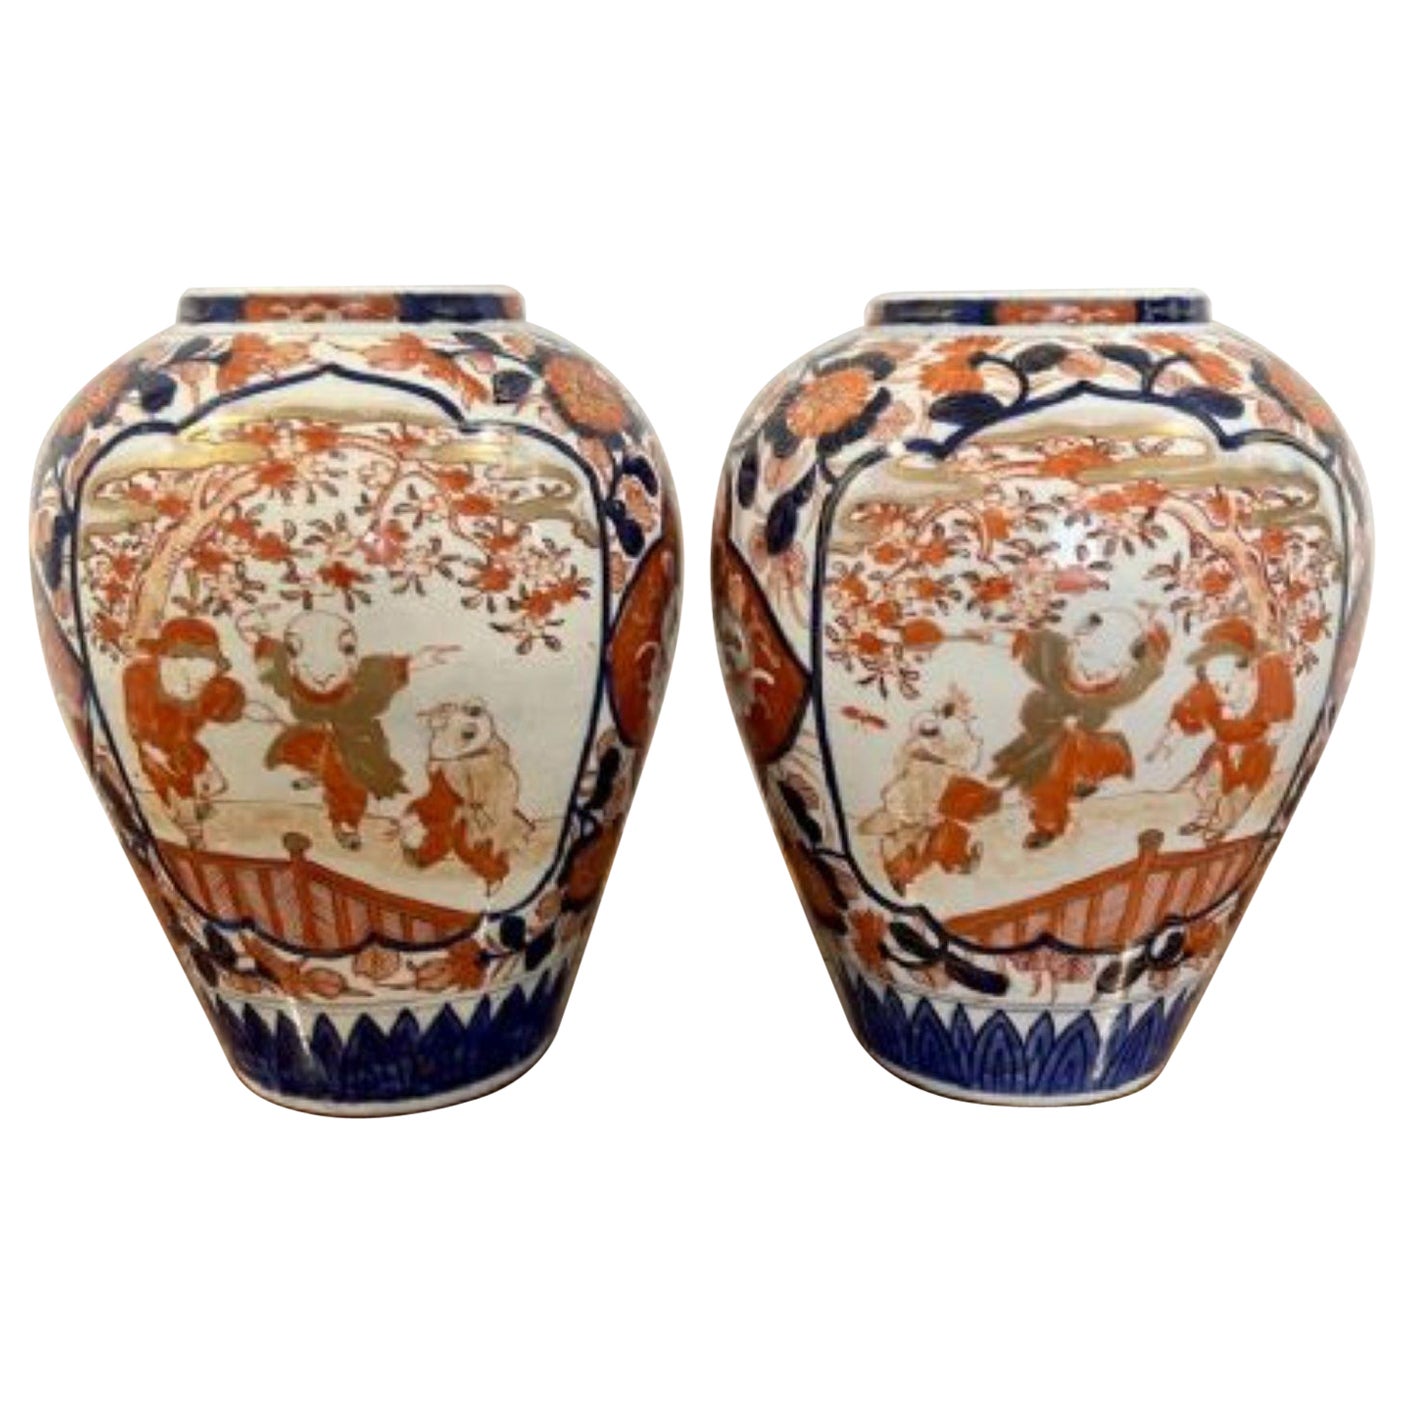 Paar antike japanische Imari-Vasen von hoher Qualität